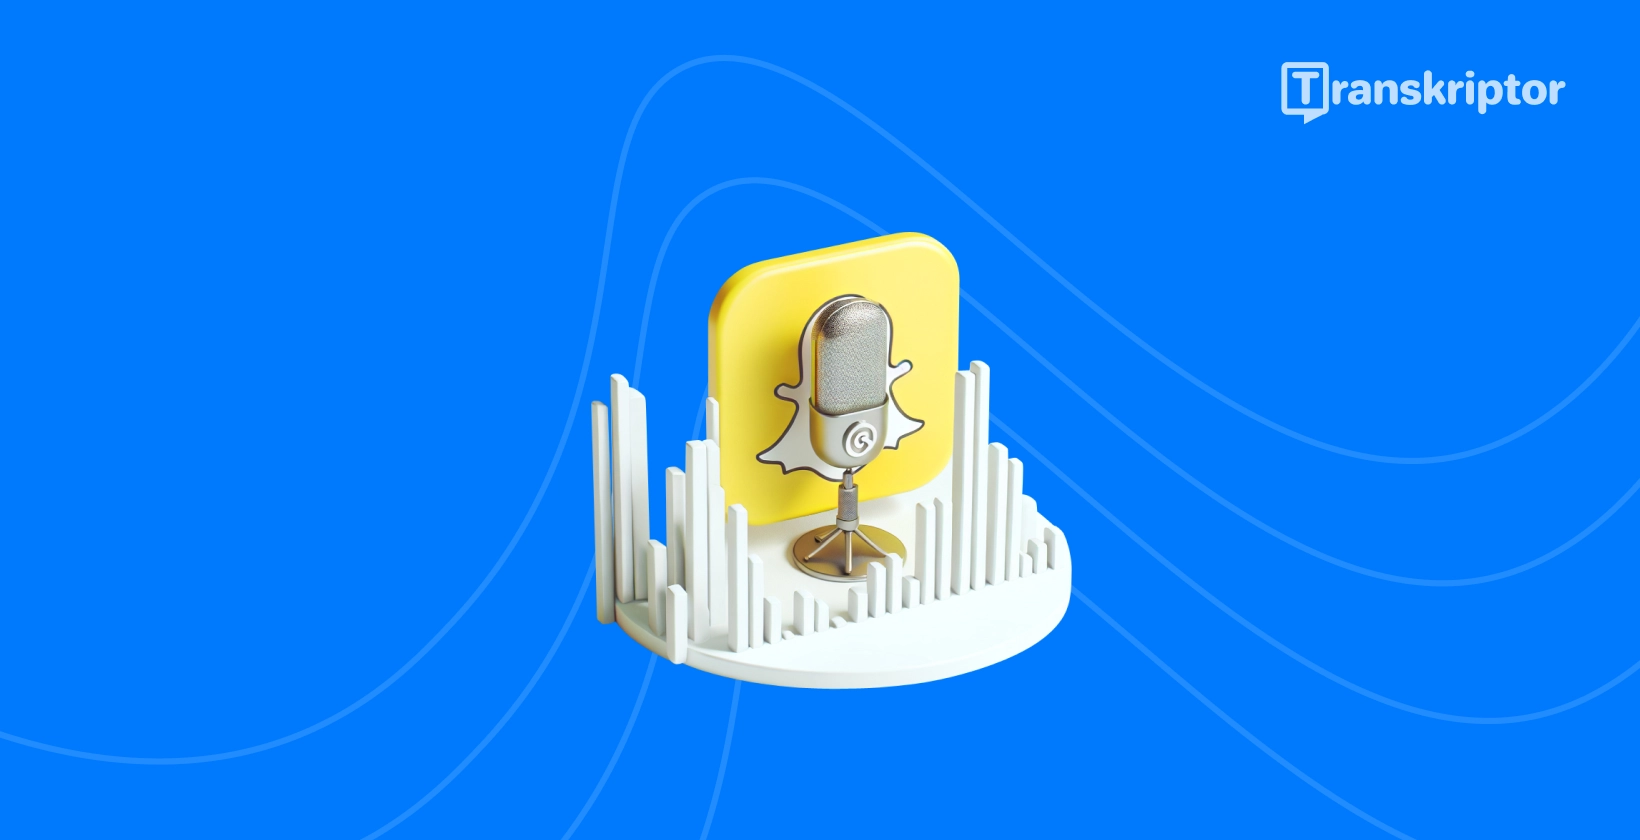 Snapchat икона на дух и микрофон која го симболизира водичот за аудио транскрипција по Transkriptor.